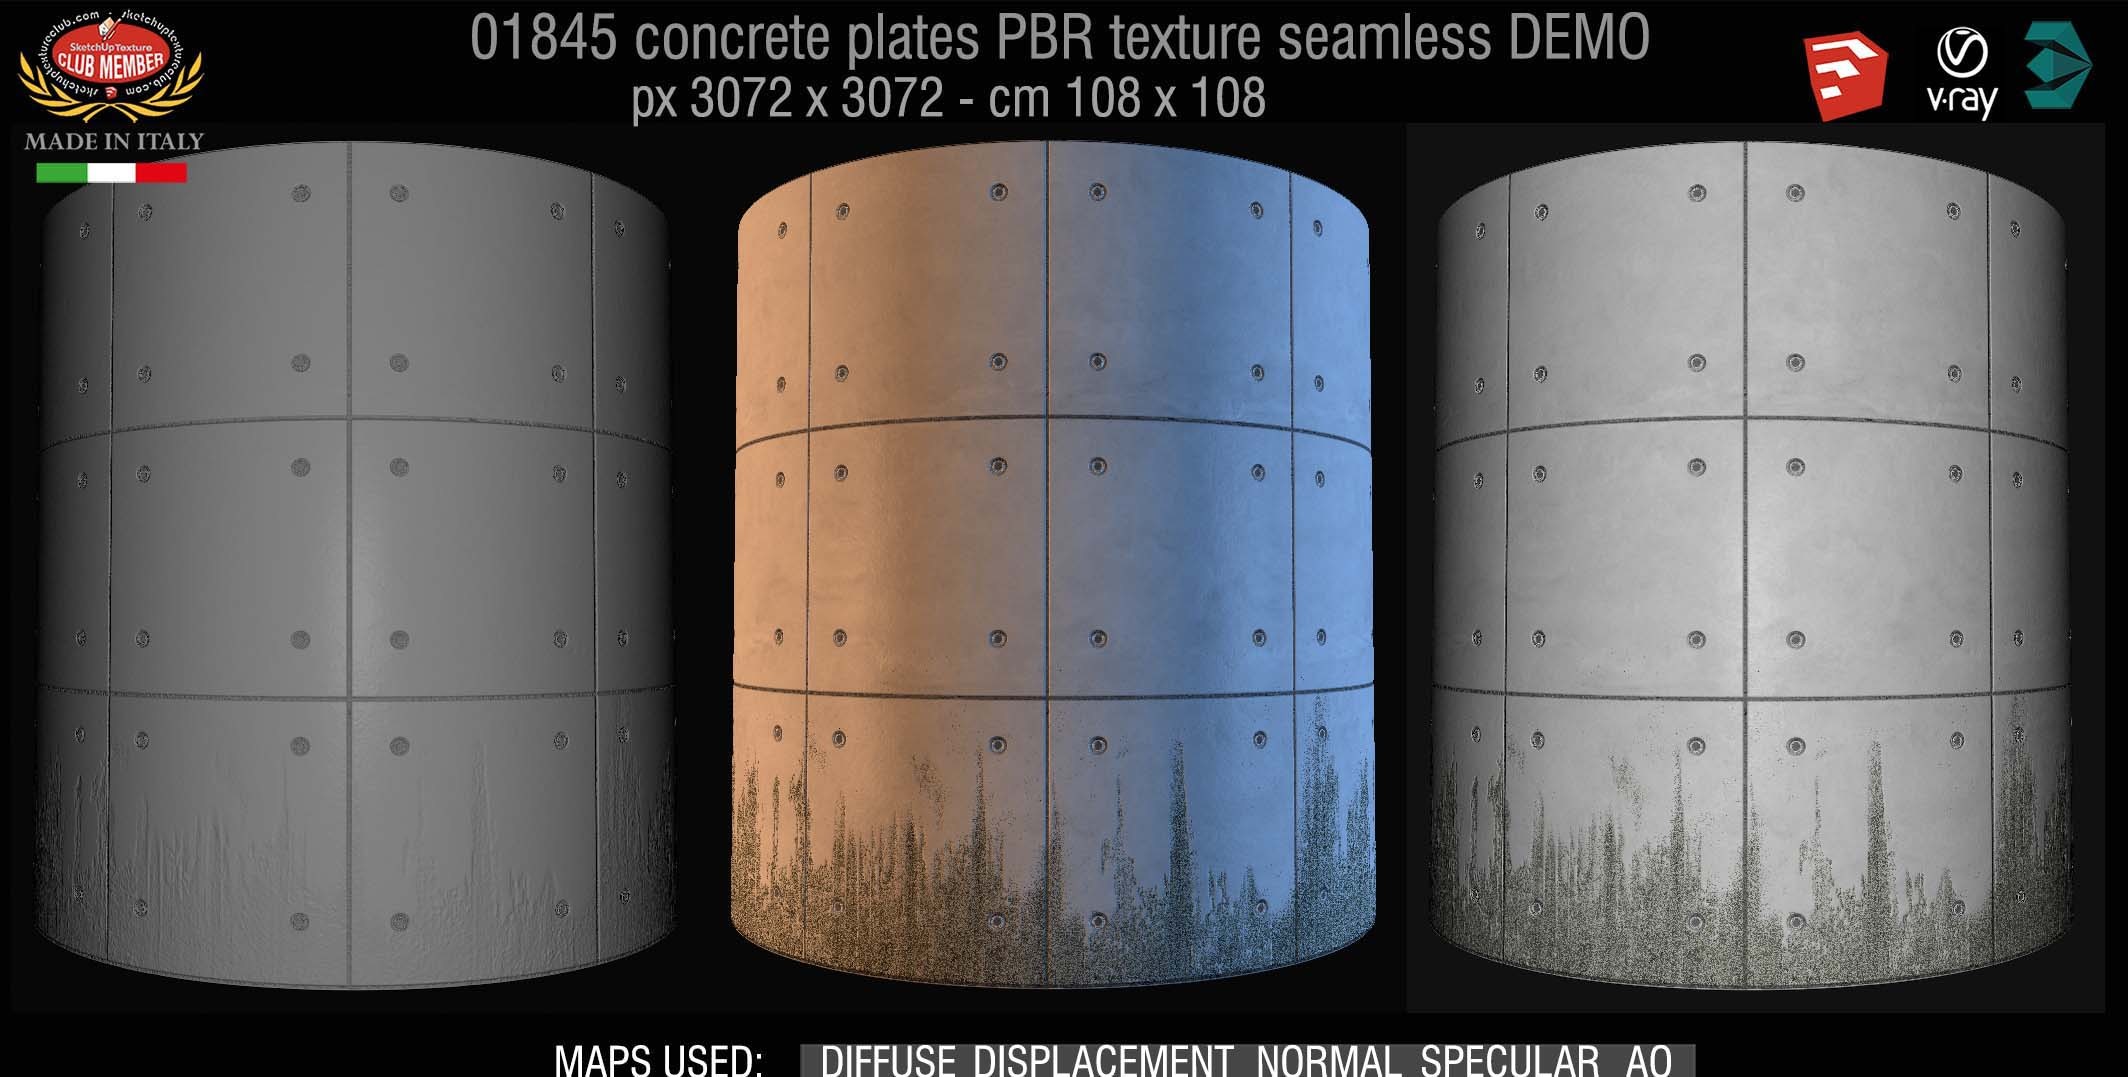 01845 Tadao Ando concrete plates PBR texture seamless DEMO